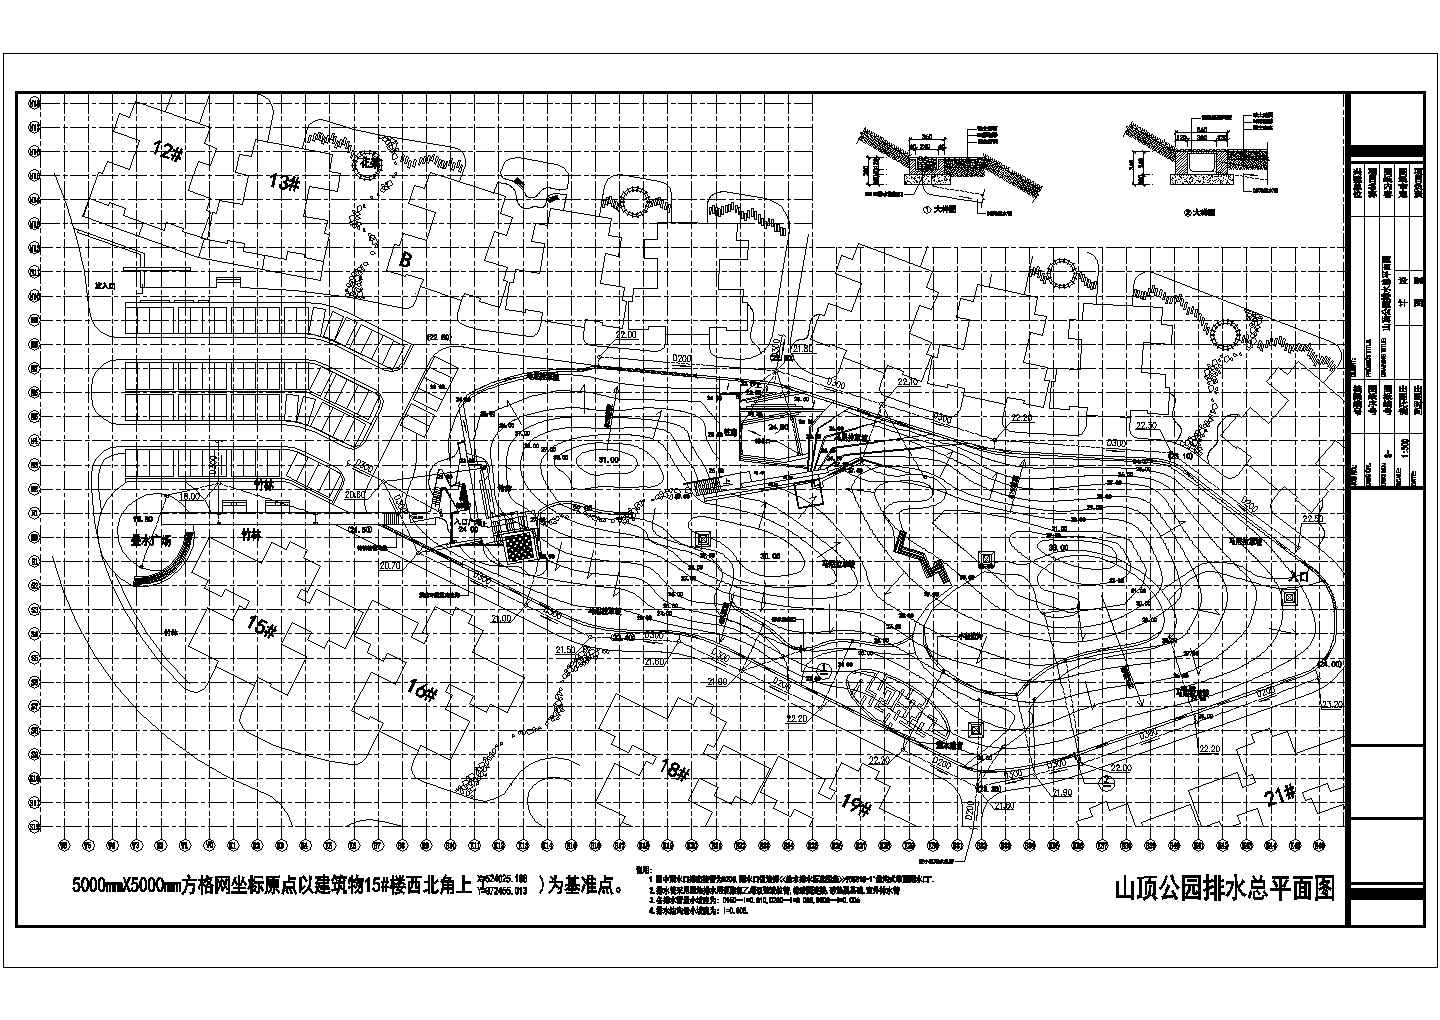 某东莞山顶公园CAD节点设计施工图种植排水总平面